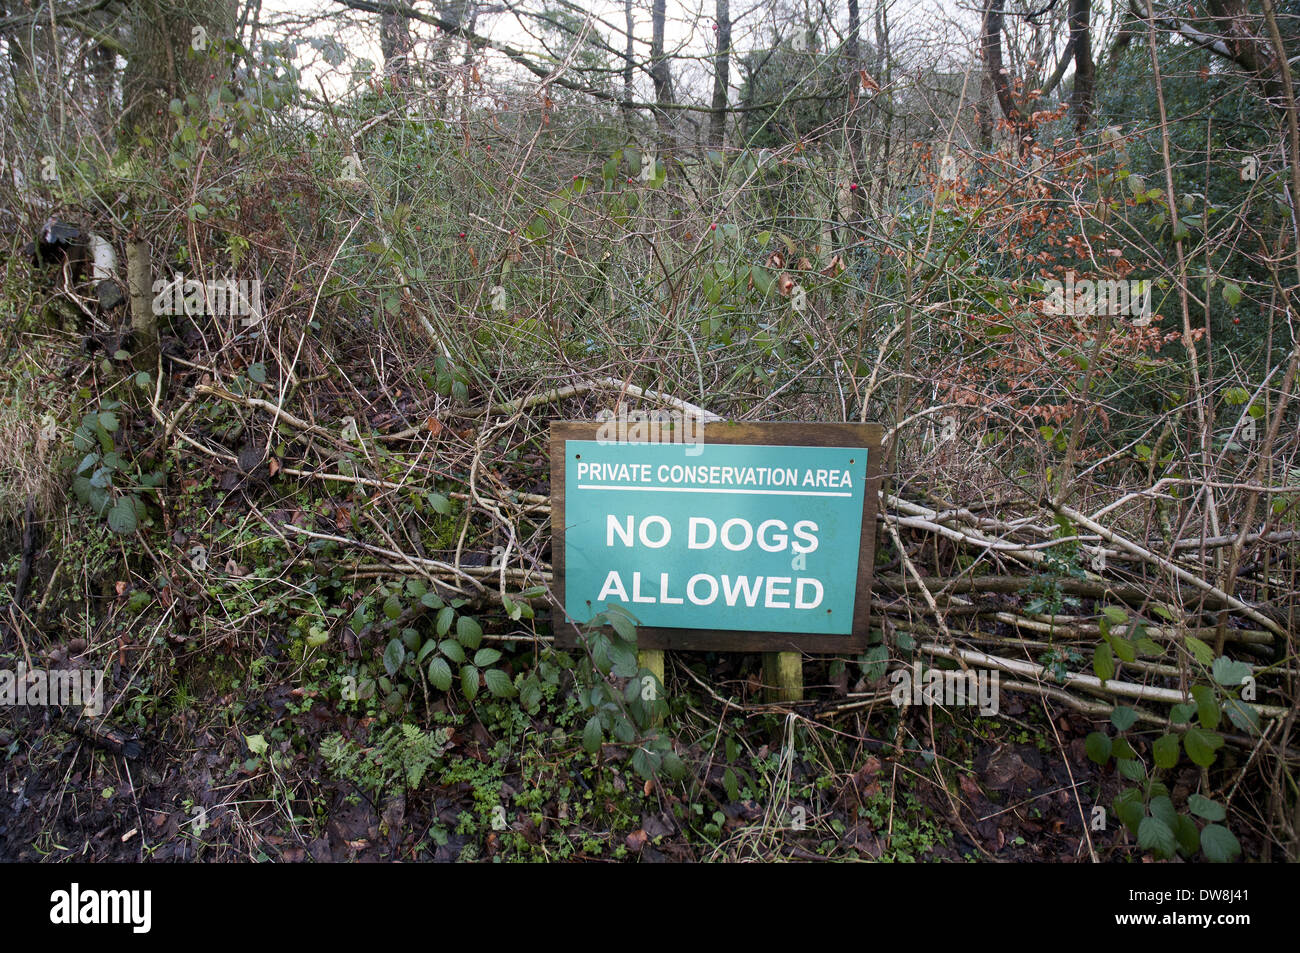 Zone de conservation privées Chiens non admis" Broyeuse Lancashire England Janvier Banque D'Images